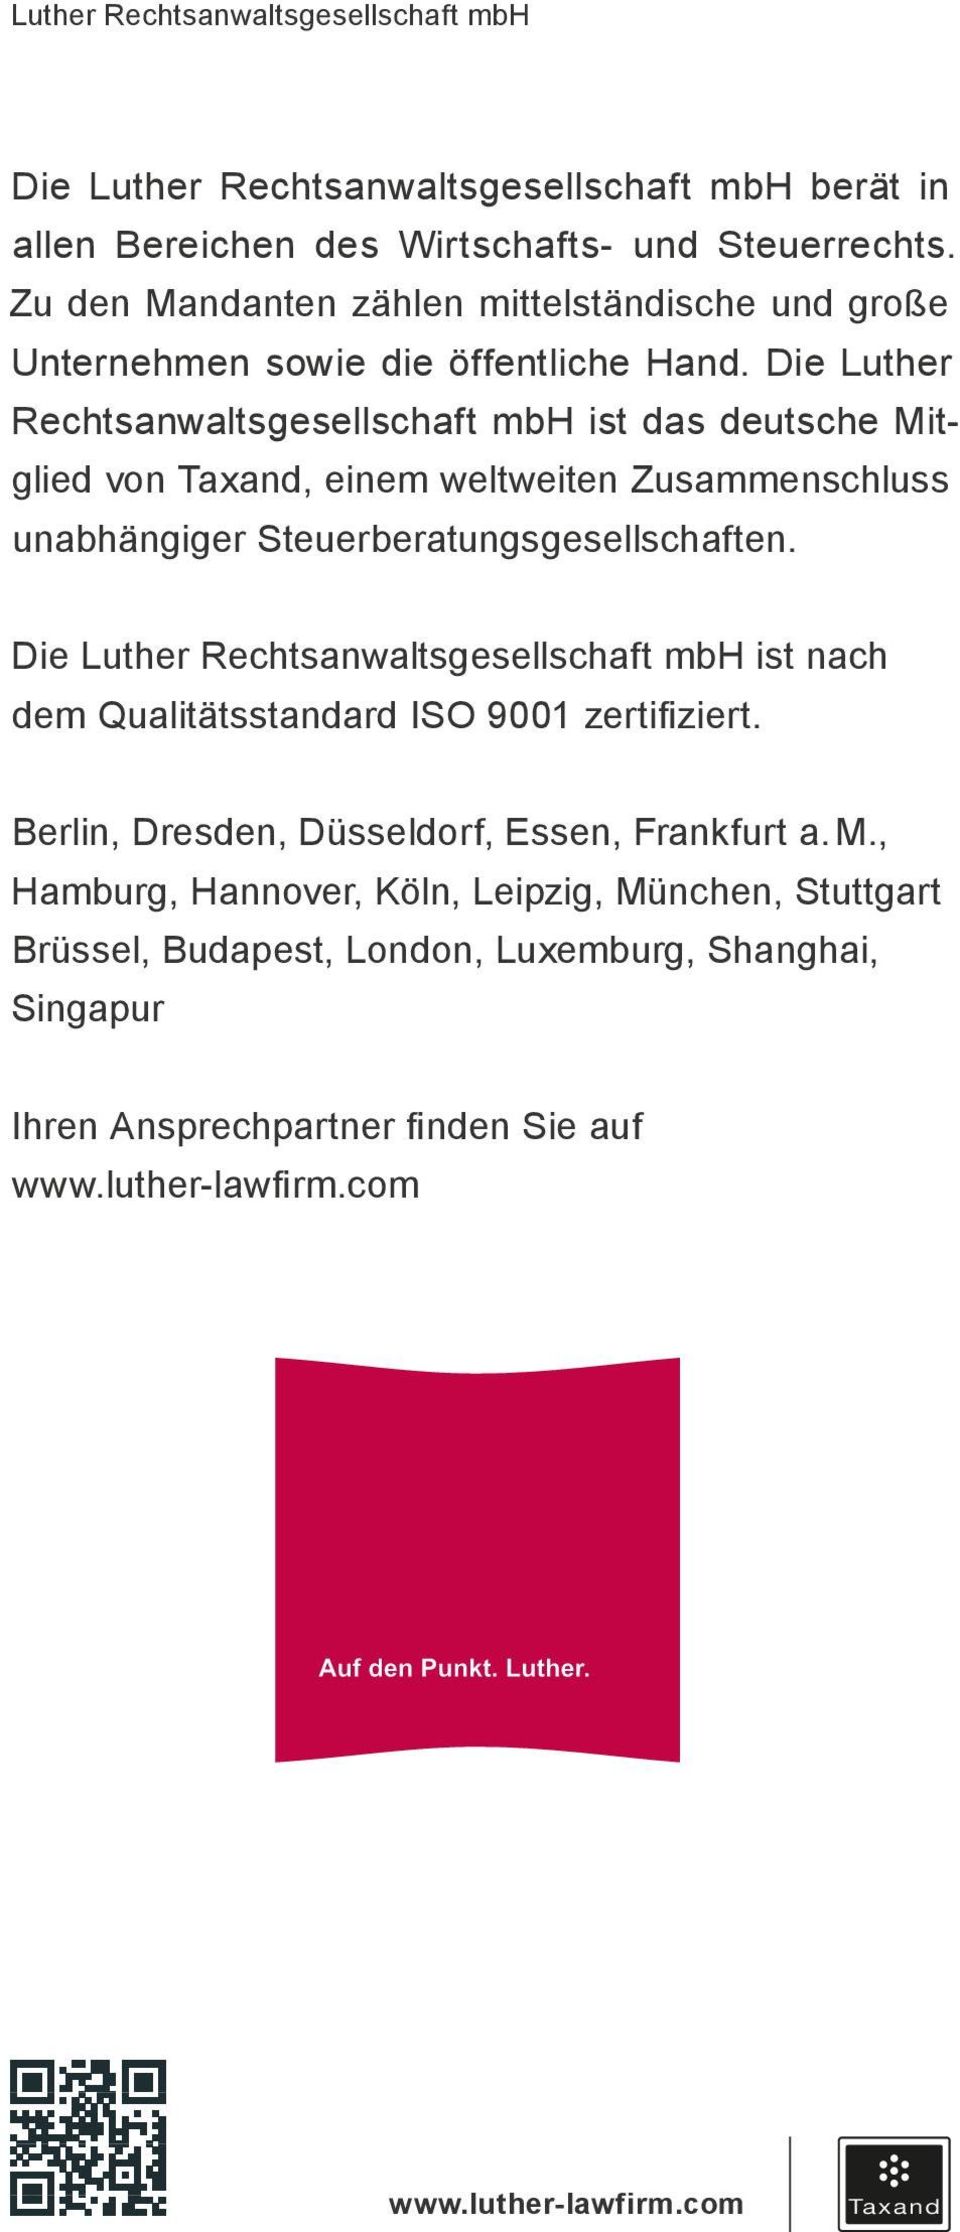 Die Luther Rechtsanwaltsgesellschaft mbh ist das deutsche Mitglied von Taxand, einem weltweiten Zusammenschluss unabhängiger Steuerberatungsgesellschaften.